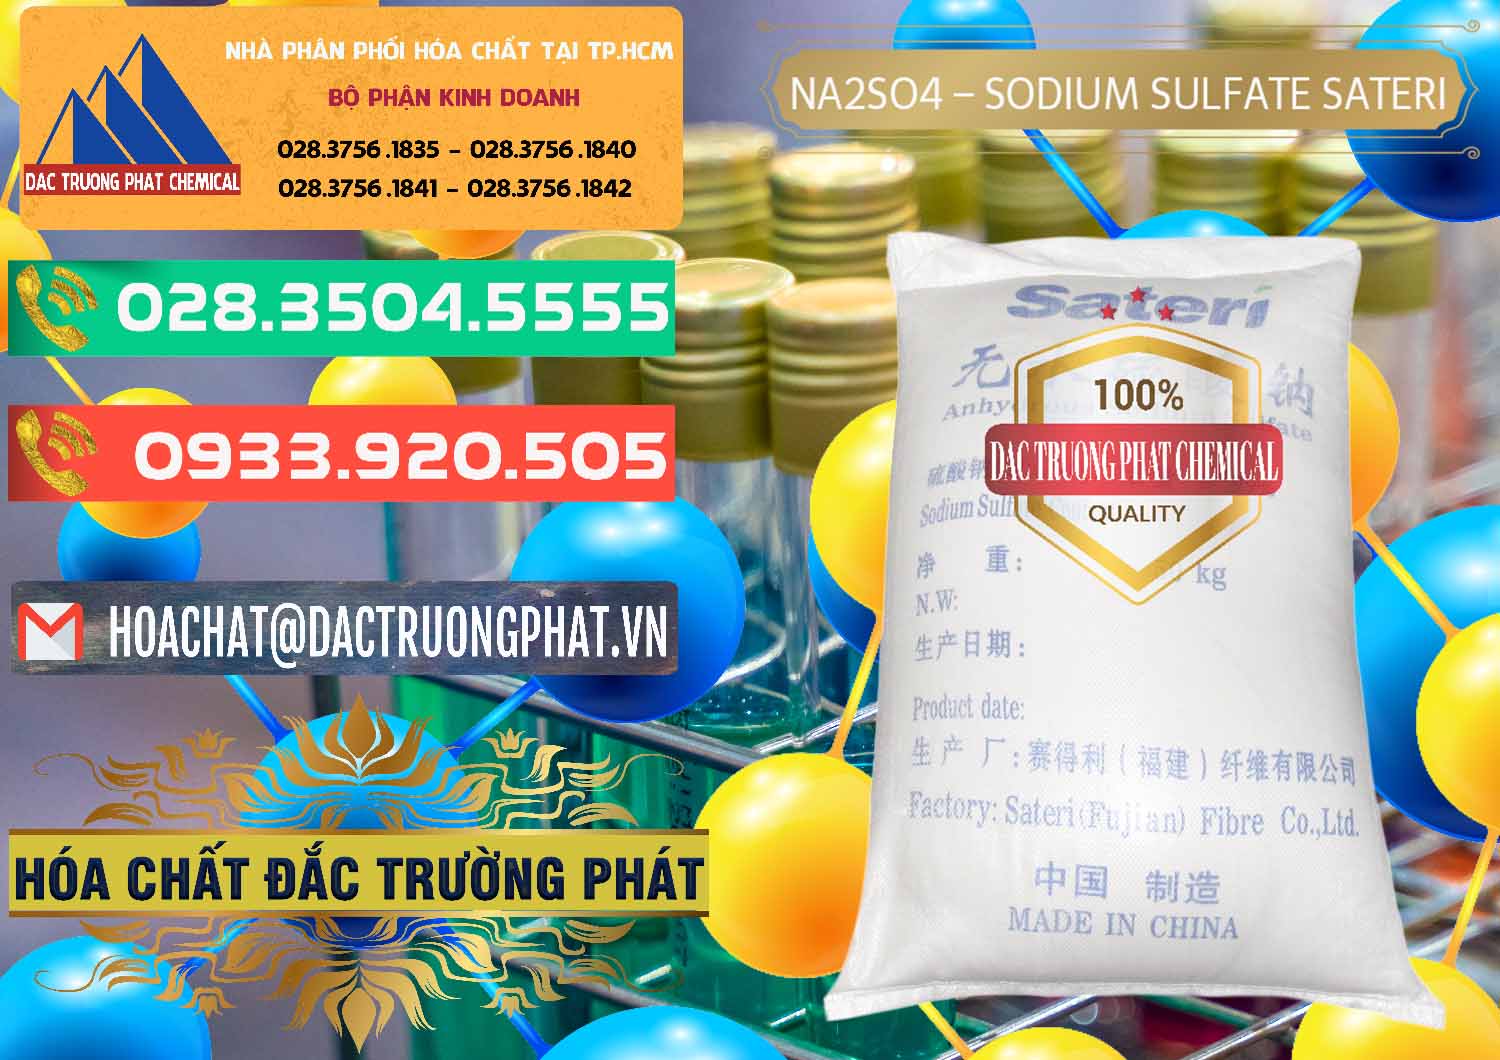 Chuyên bán ( cung ứng ) Sodium Sulphate - Muối Sunfat Na2SO4 Sateri Trung Quốc China - 0100 - Công ty chuyên phân phối ( nhập khẩu ) hóa chất tại TP.HCM - congtyhoachat.com.vn